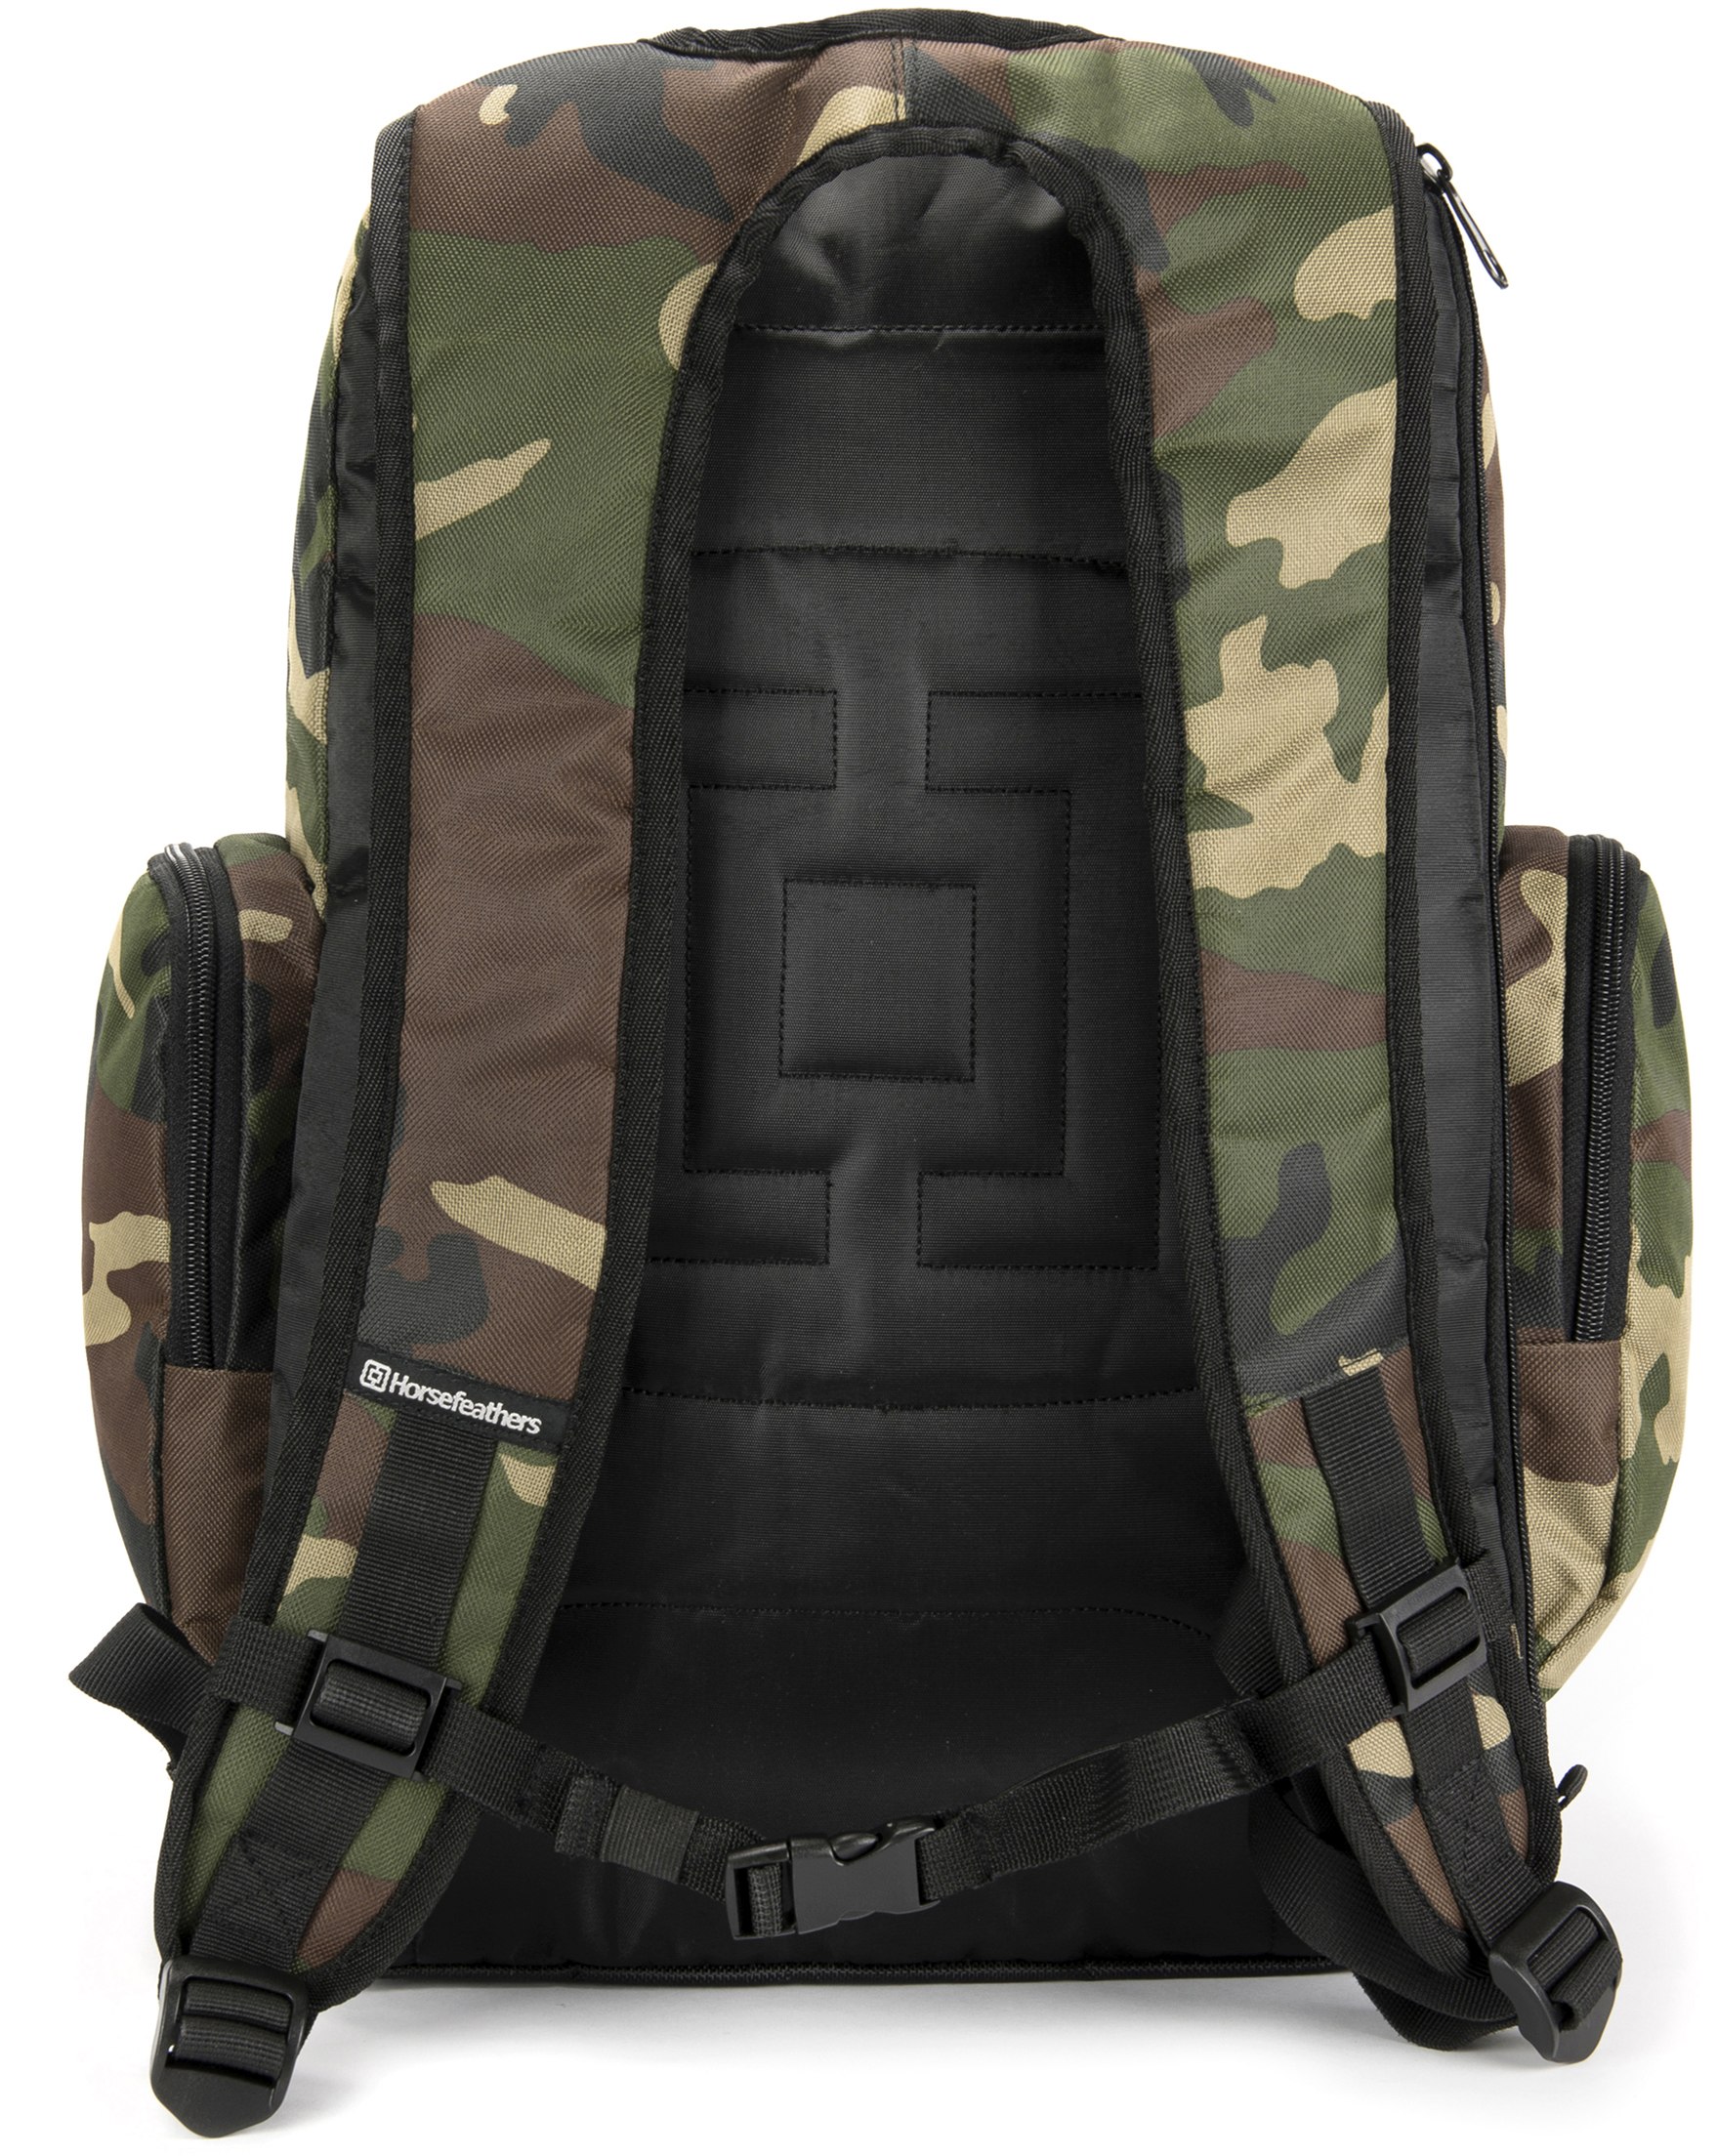 Skate backpack